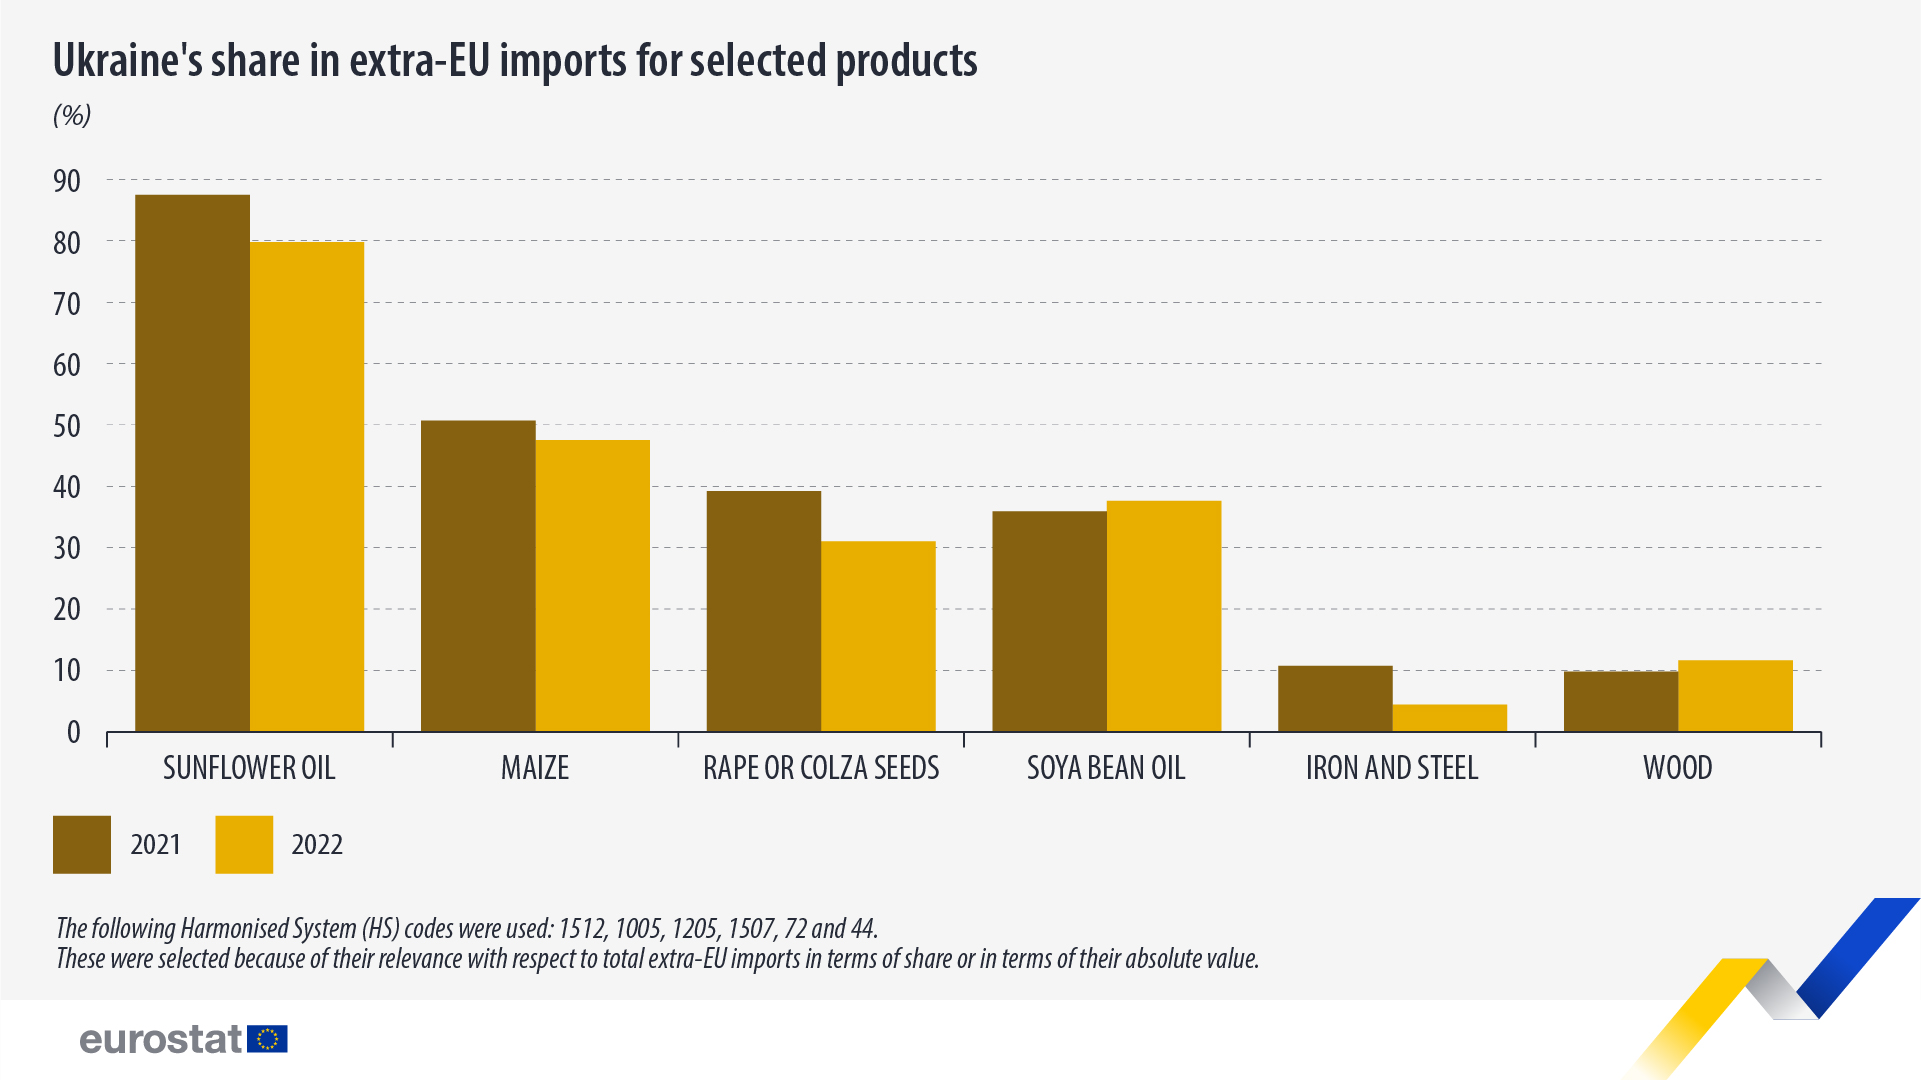 Γράφημα ράβδων: Το μερίδιο της Ουκρανίας στις εισαγωγές εκτός ΕΕ για επιλεγμένα προϊόντα, σε %, 2021 και 2022